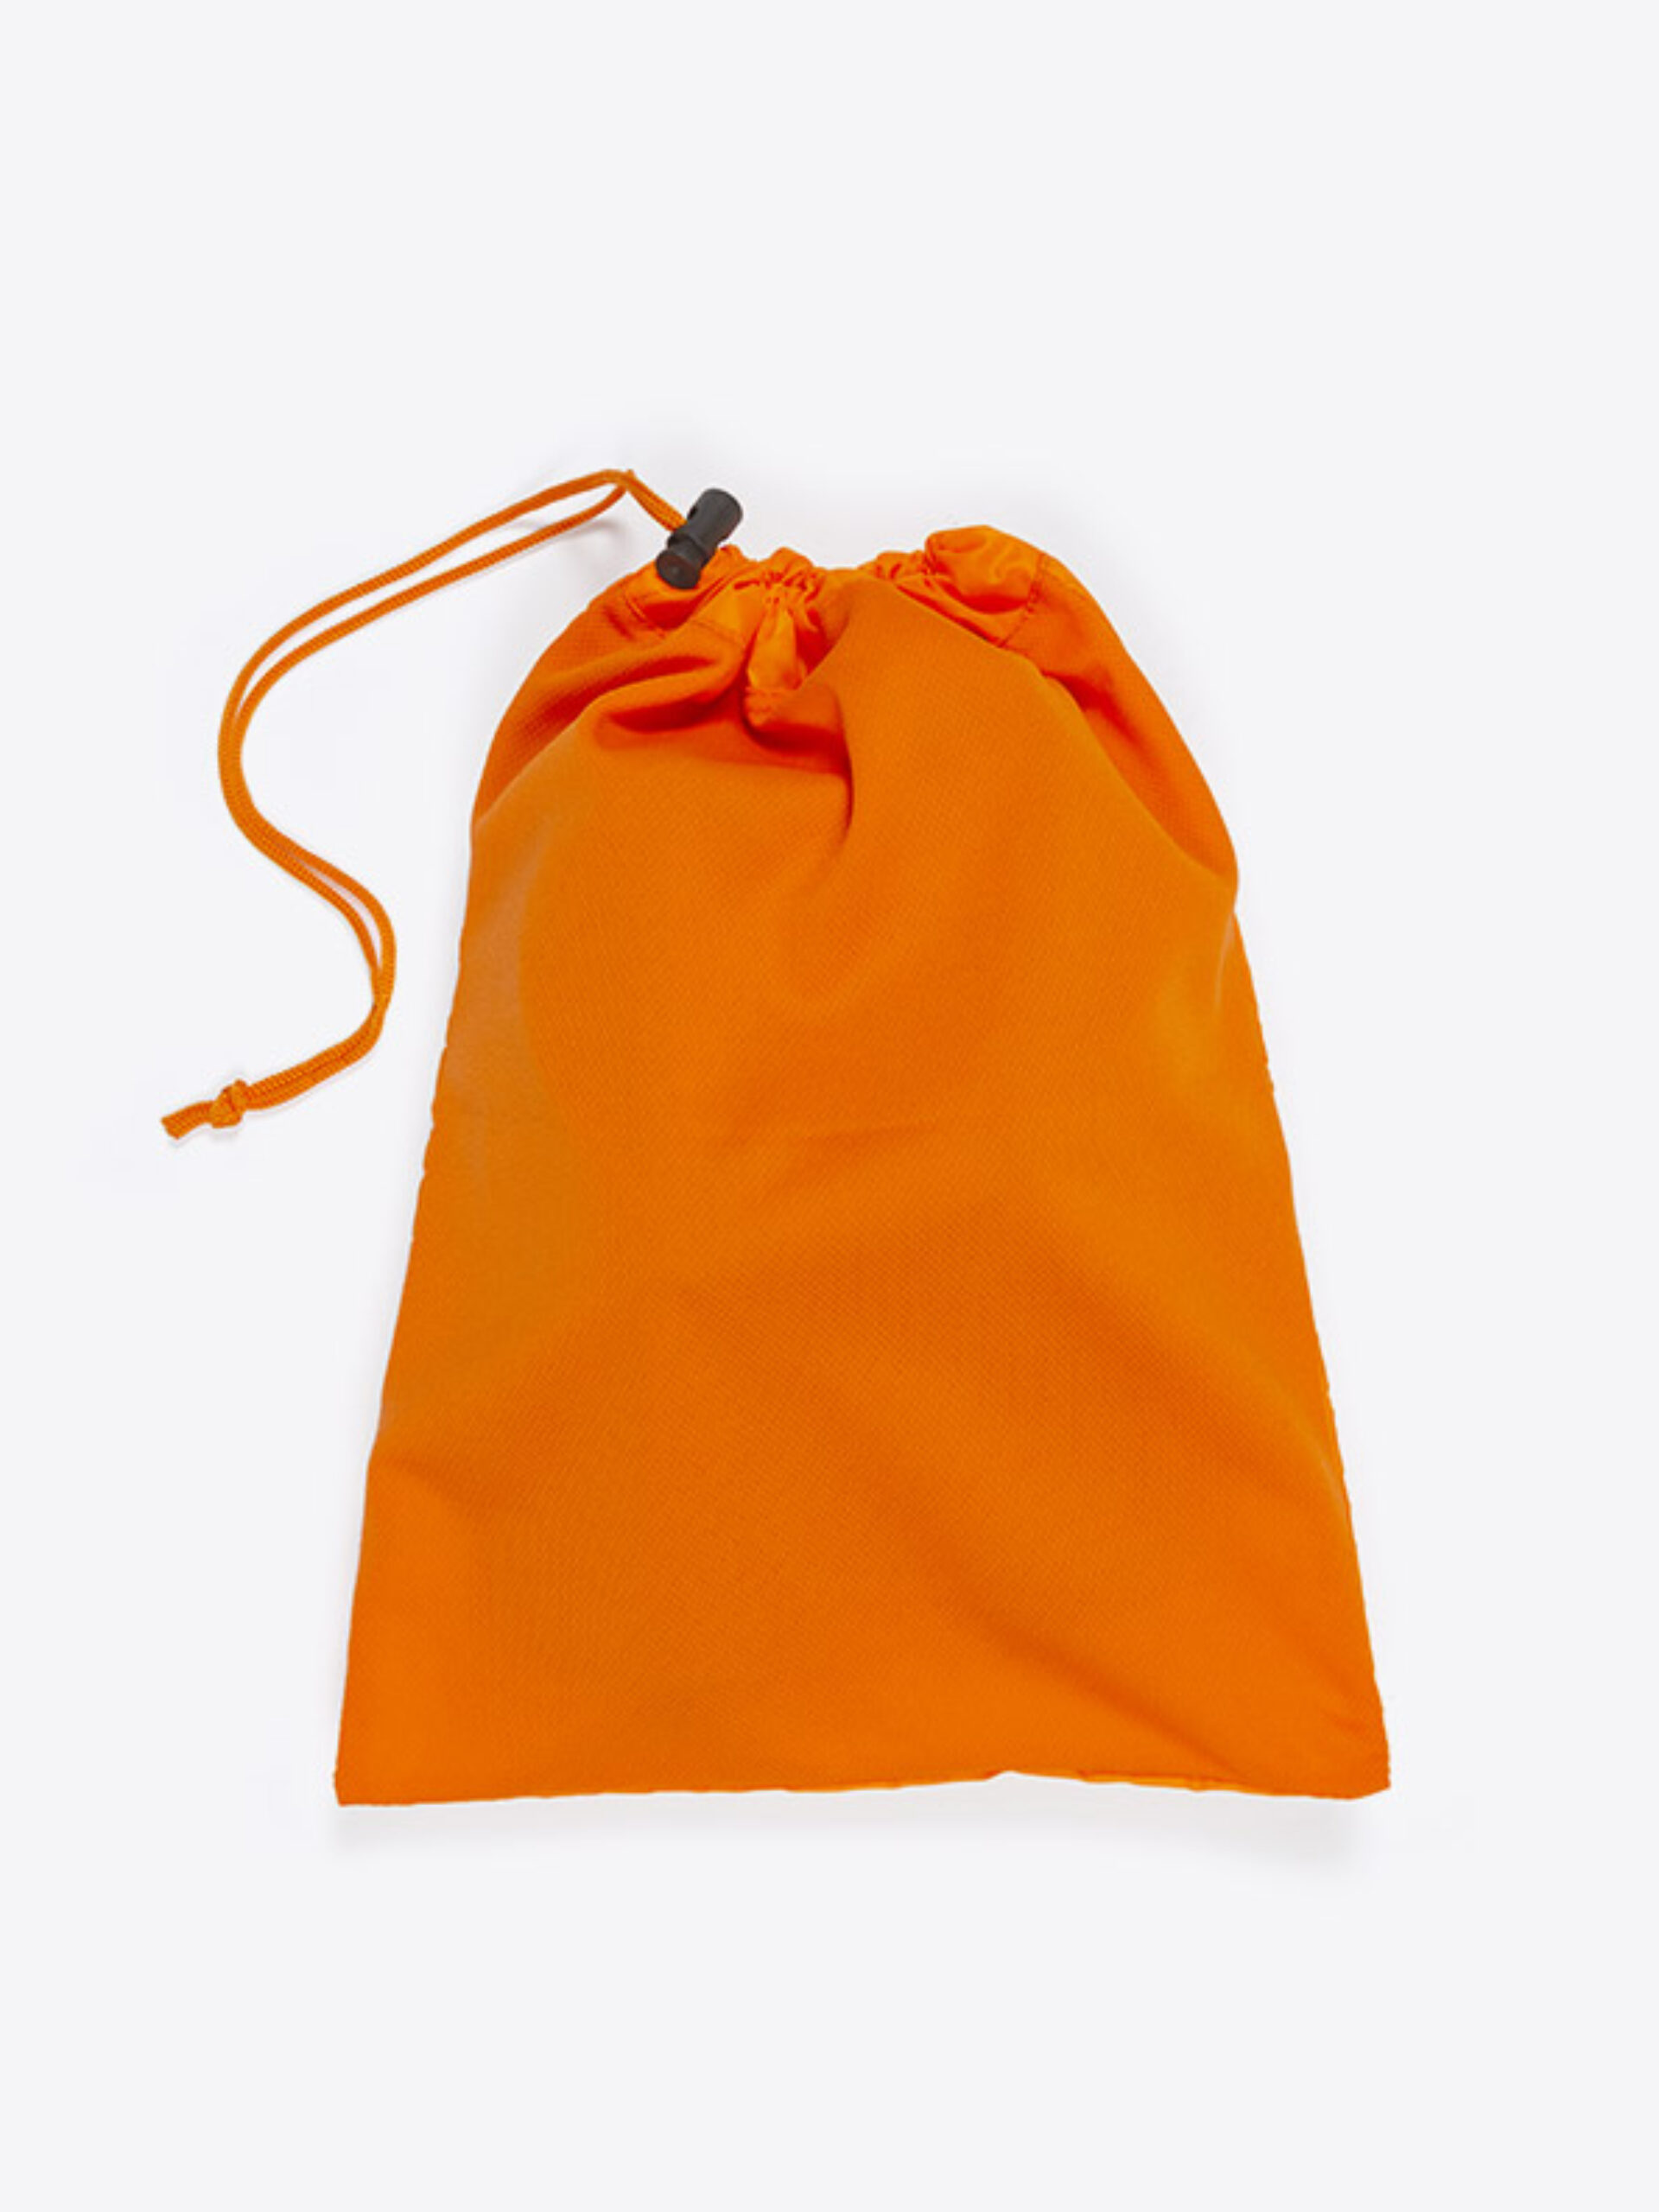 Netz Beutel Polyester Mit Logo Bedrucken Faire Produktion Orange